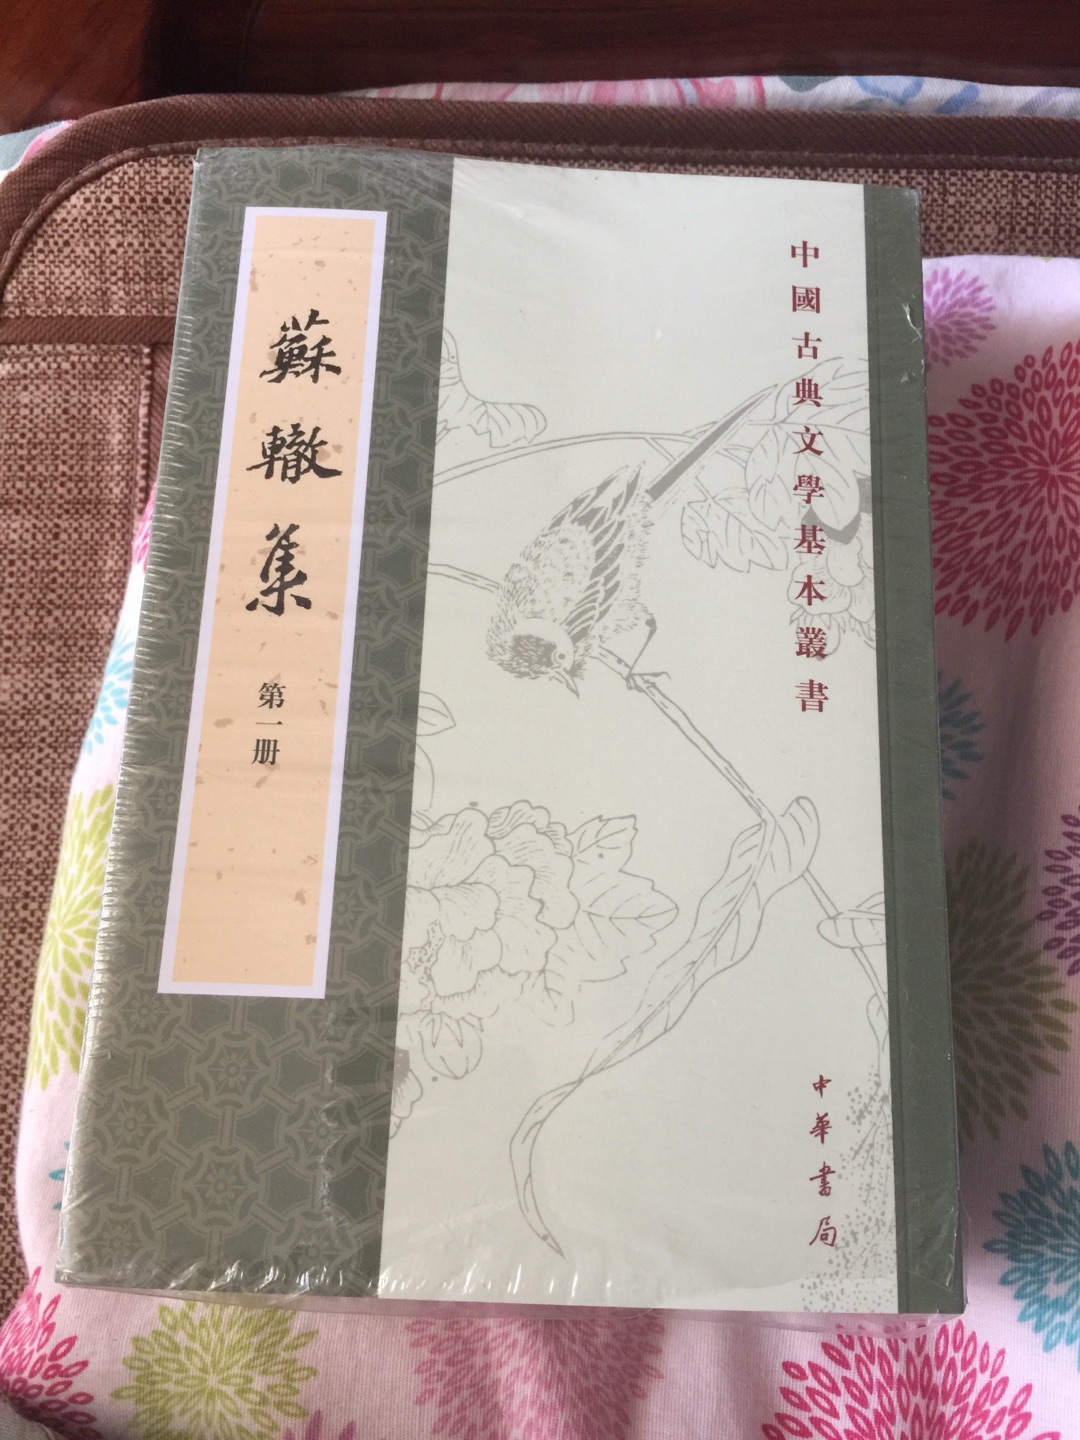 苏辙的作品集，中华书局出版的、不错的